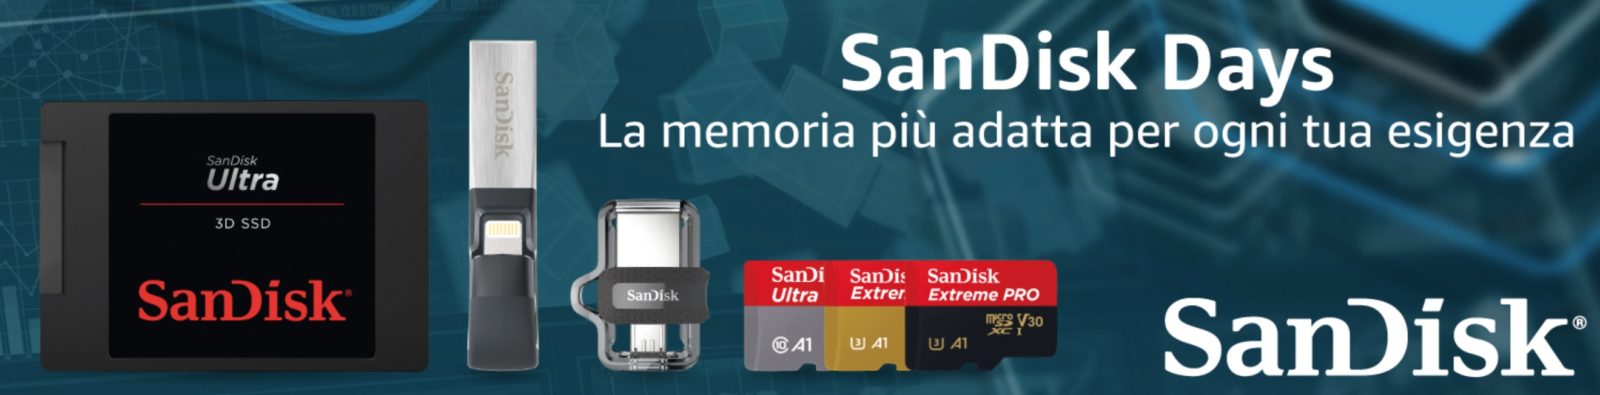 I Sandisk Days di Amazon mettono in sconto memorie Flash, SSD, e chiavette USB, iPhone e Wireless